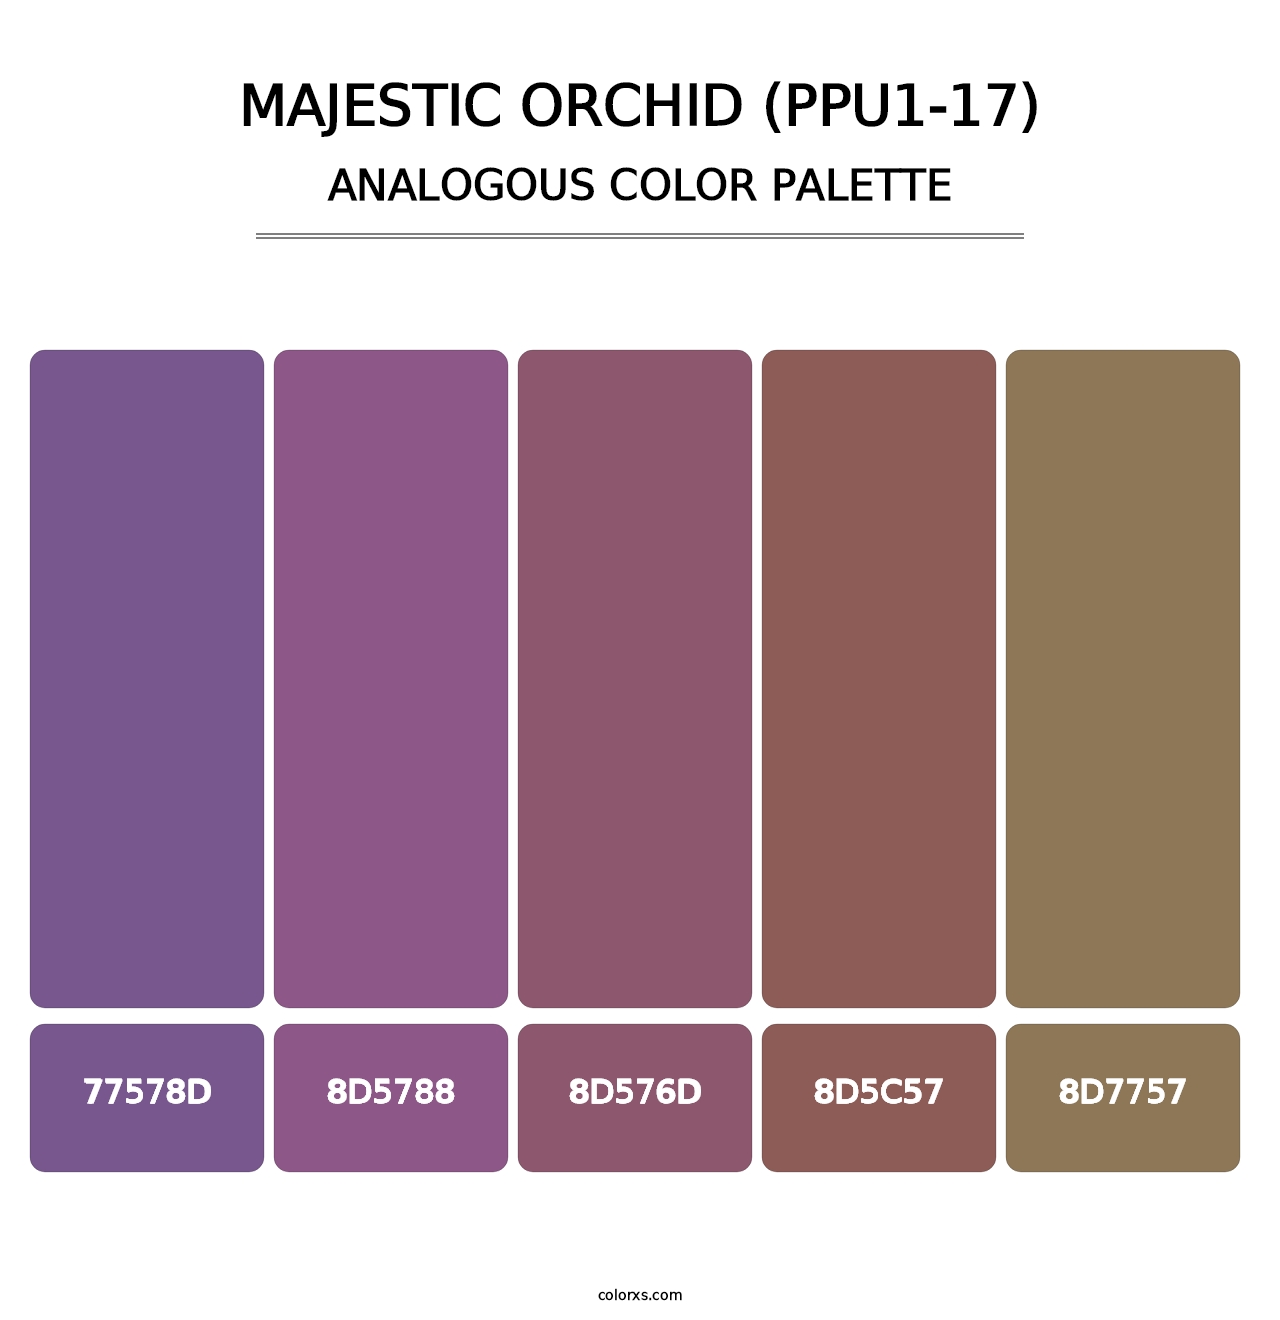 Majestic Orchid (PPU1-17) - Analogous Color Palette